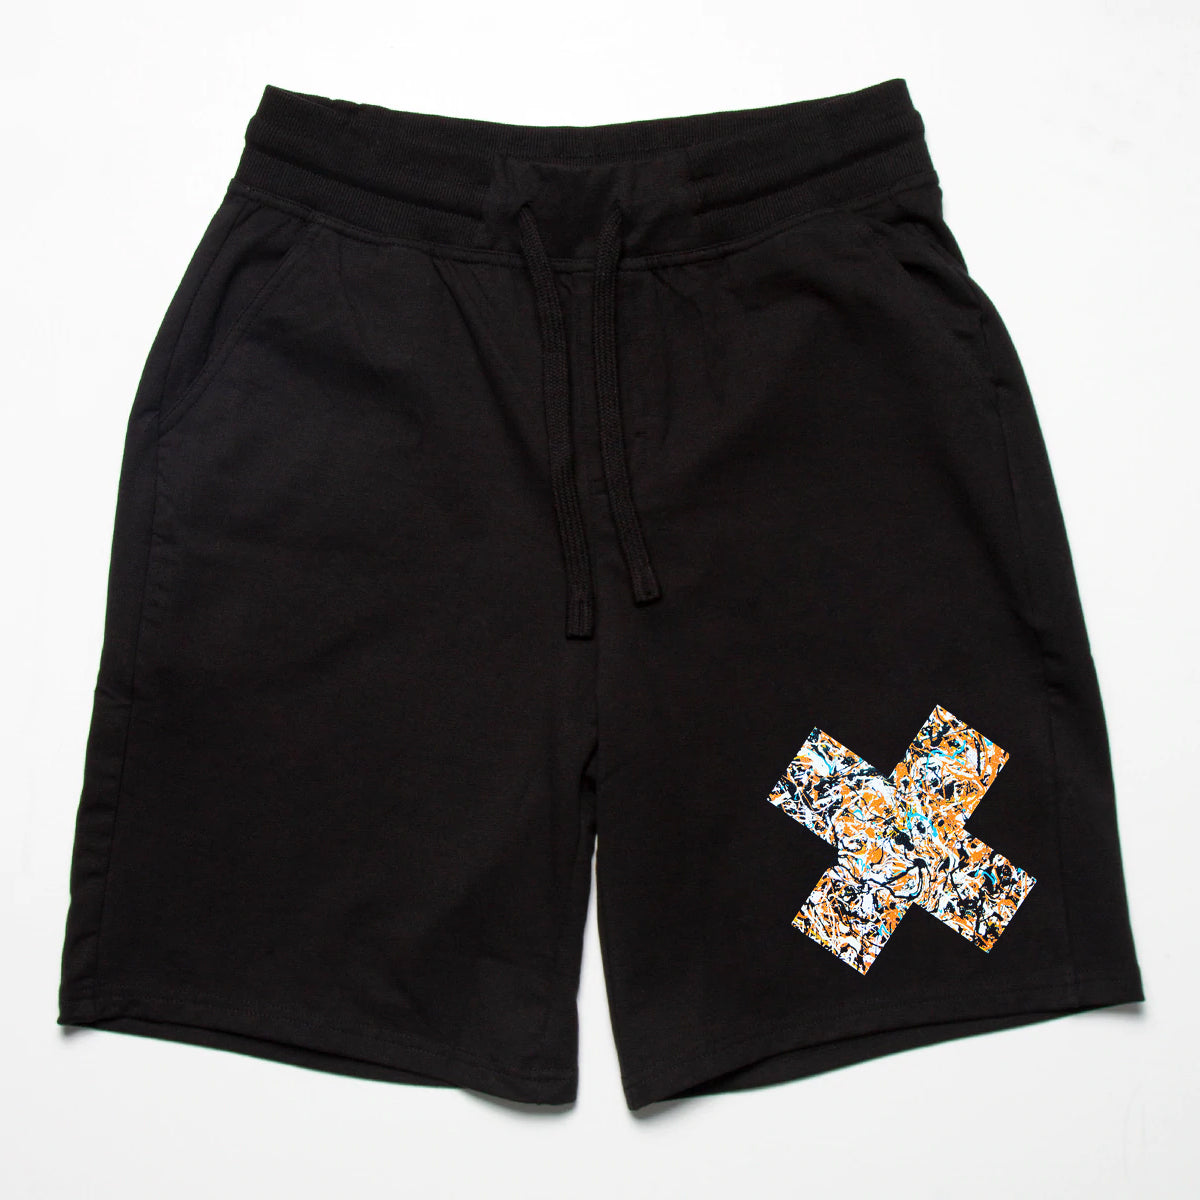 Jackson X Imprint - Jersey Shorts - Black